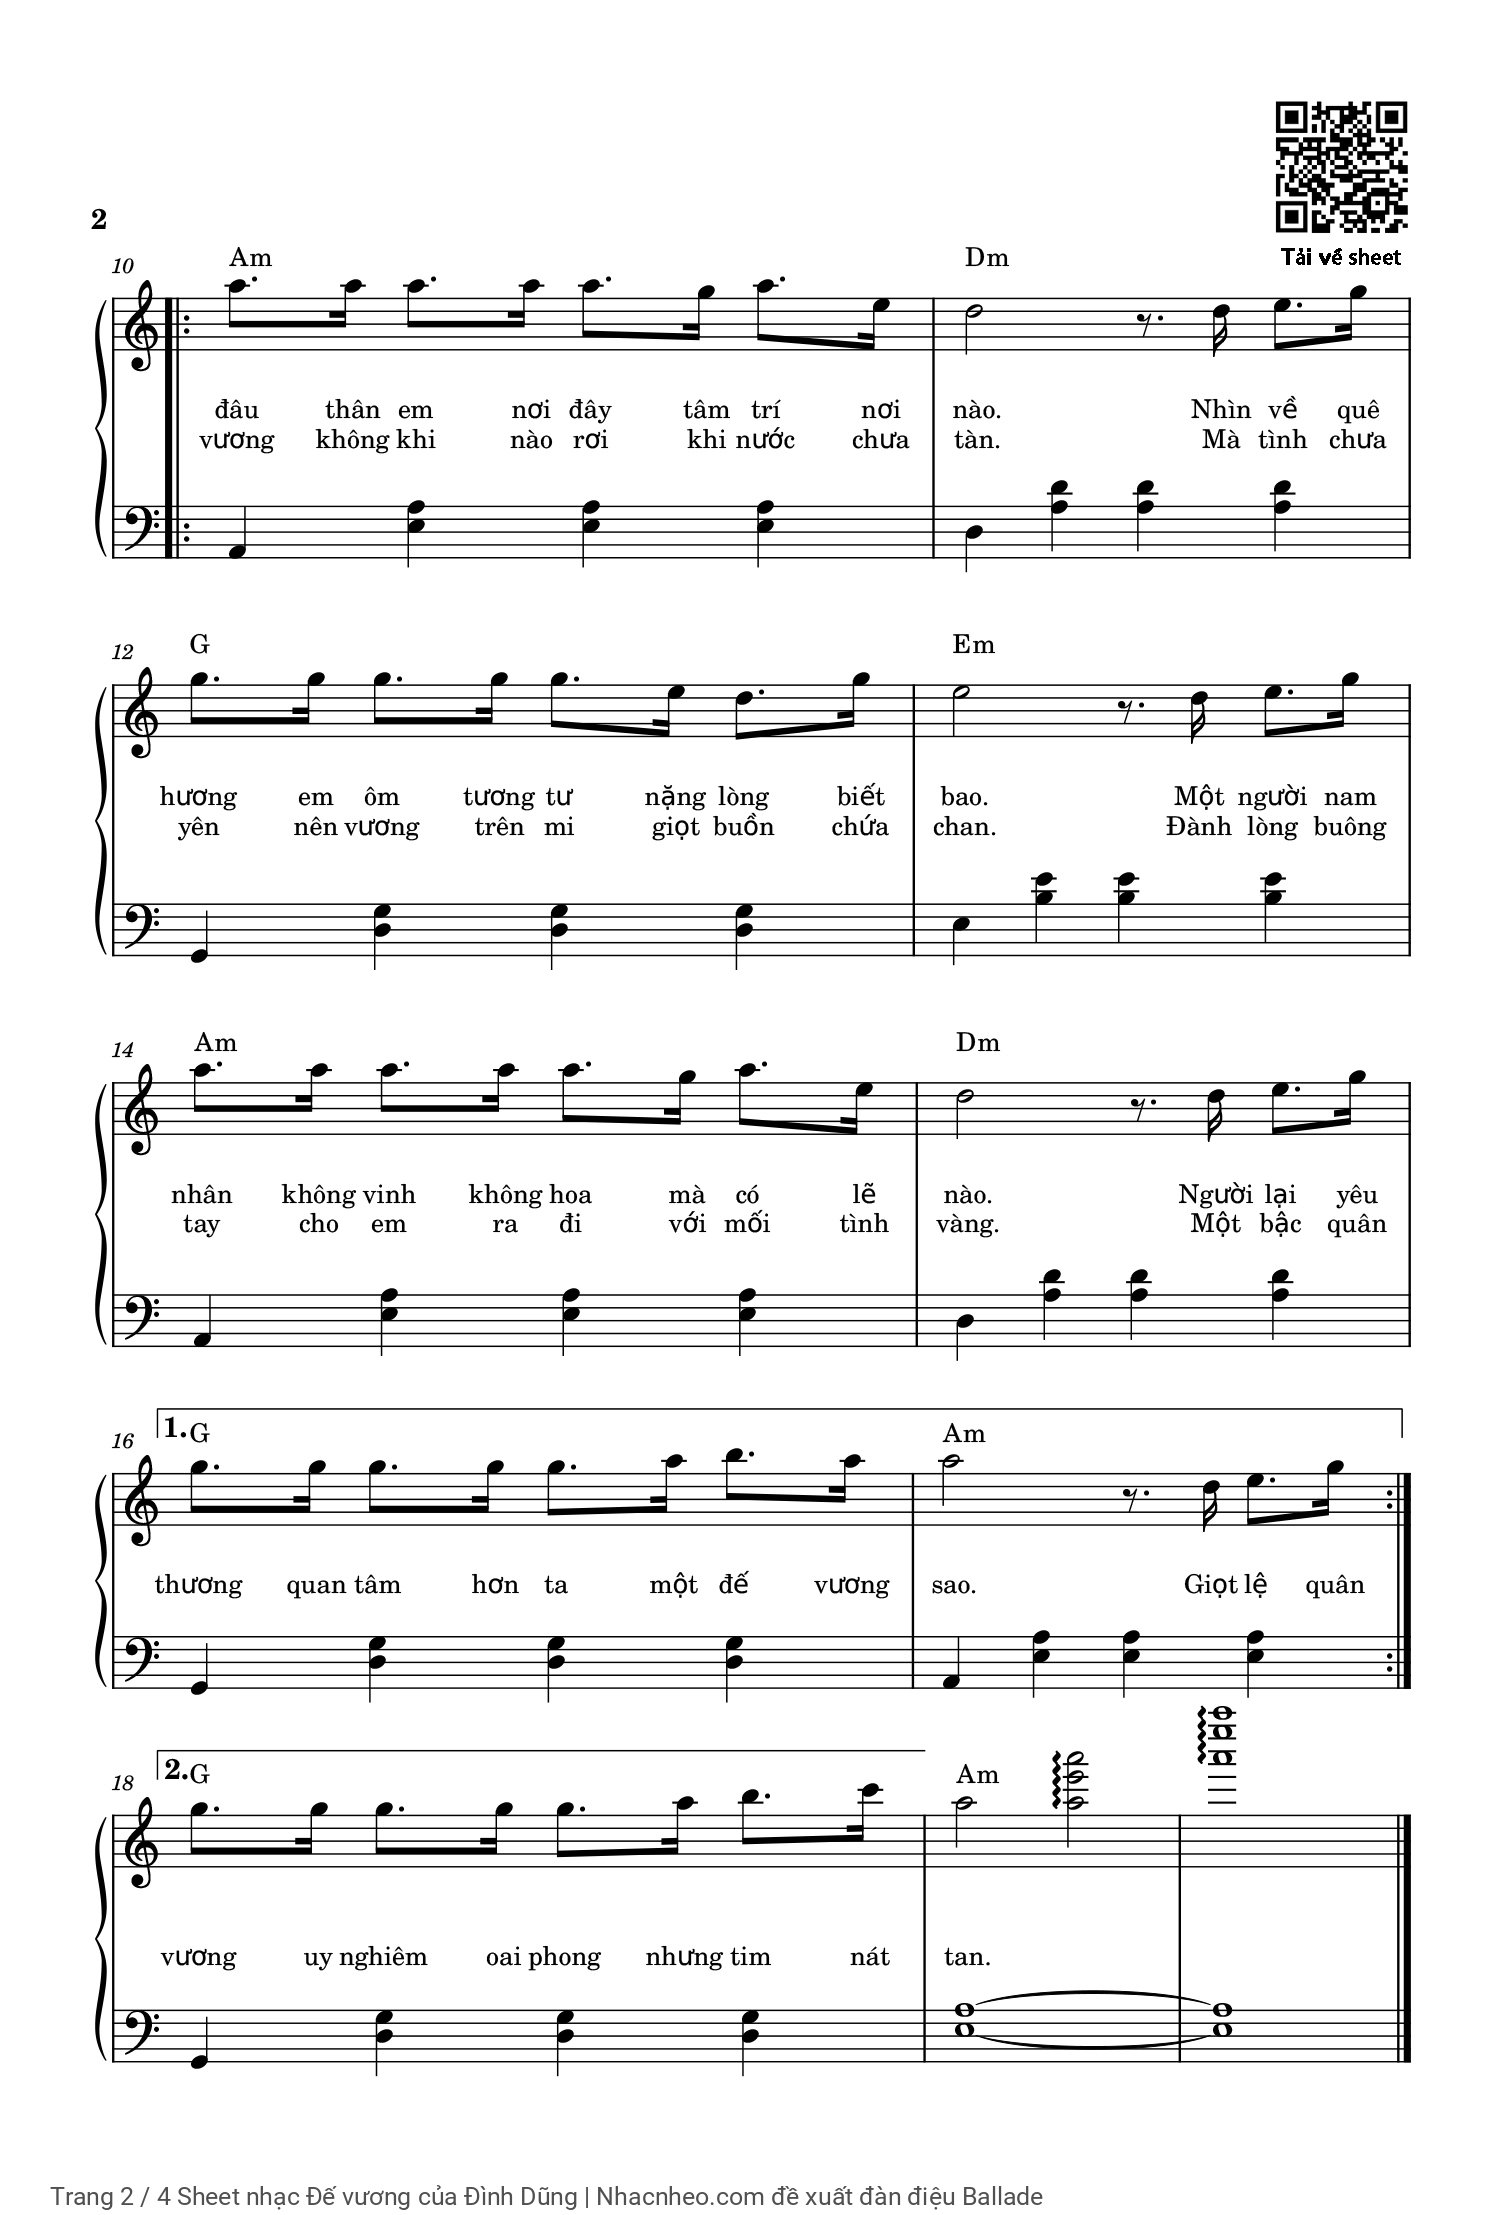 Trang 2 của Sheet nhạc PDF Piano bài hát Đế vương - Đình Dũng